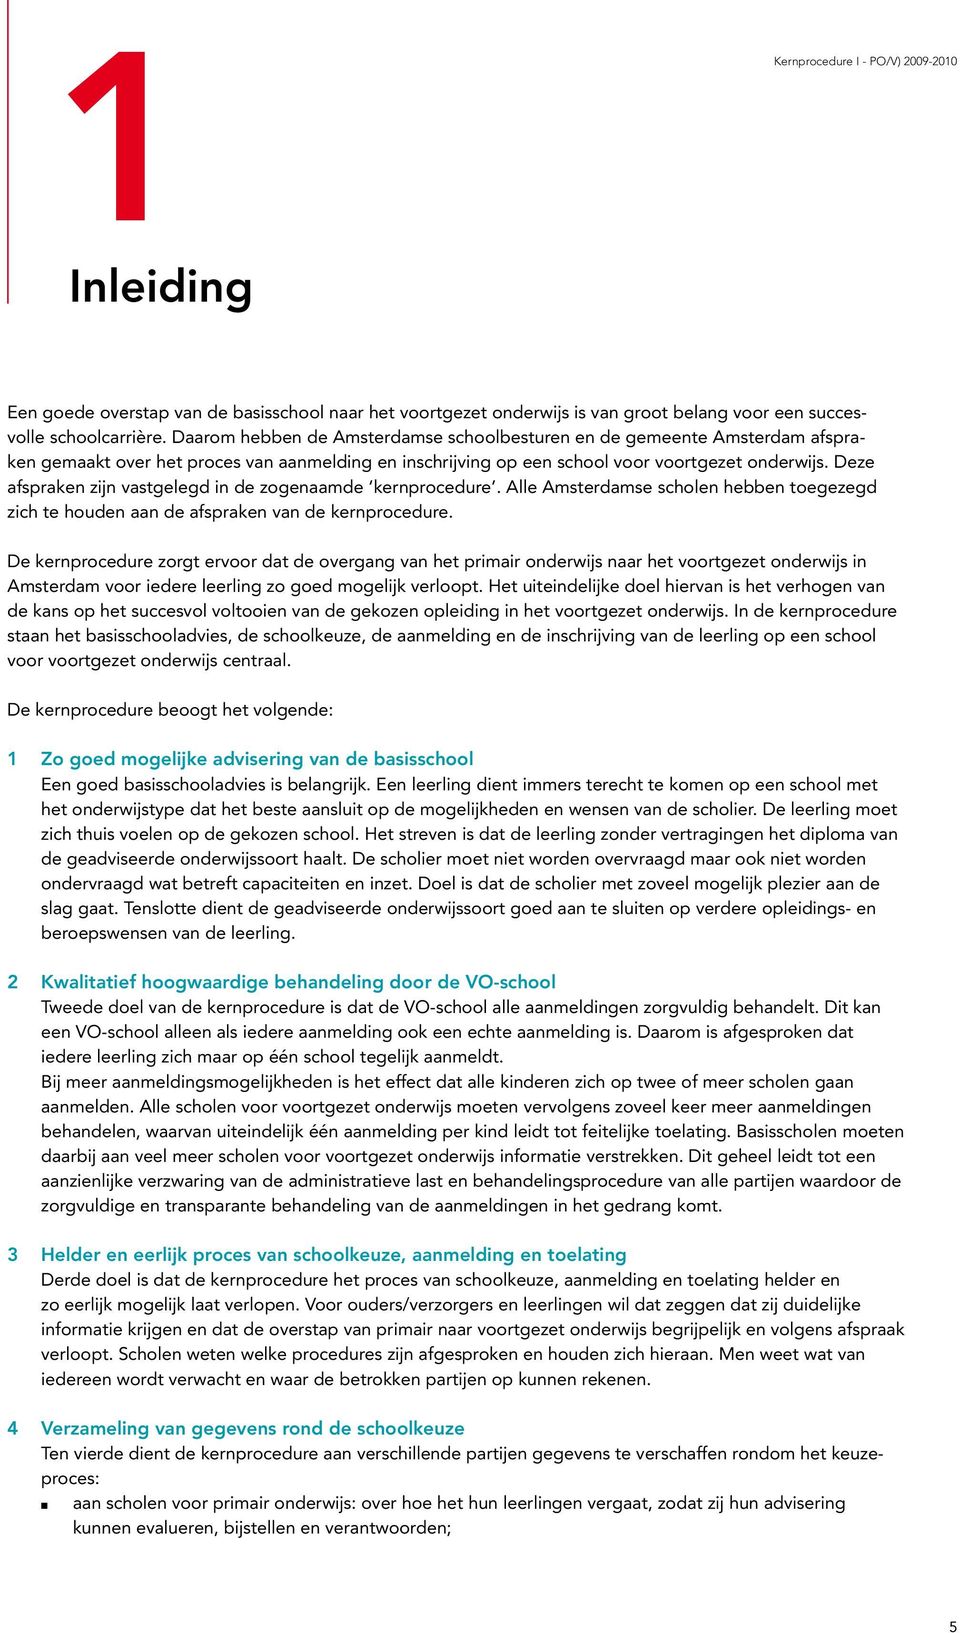 Deze afspraken zijn vastgelegd in de zogenaamde kernprocedure. Alle Amsterdamse scholen hebben toegezegd zich te houden aan de afspraken van de kernprocedure.